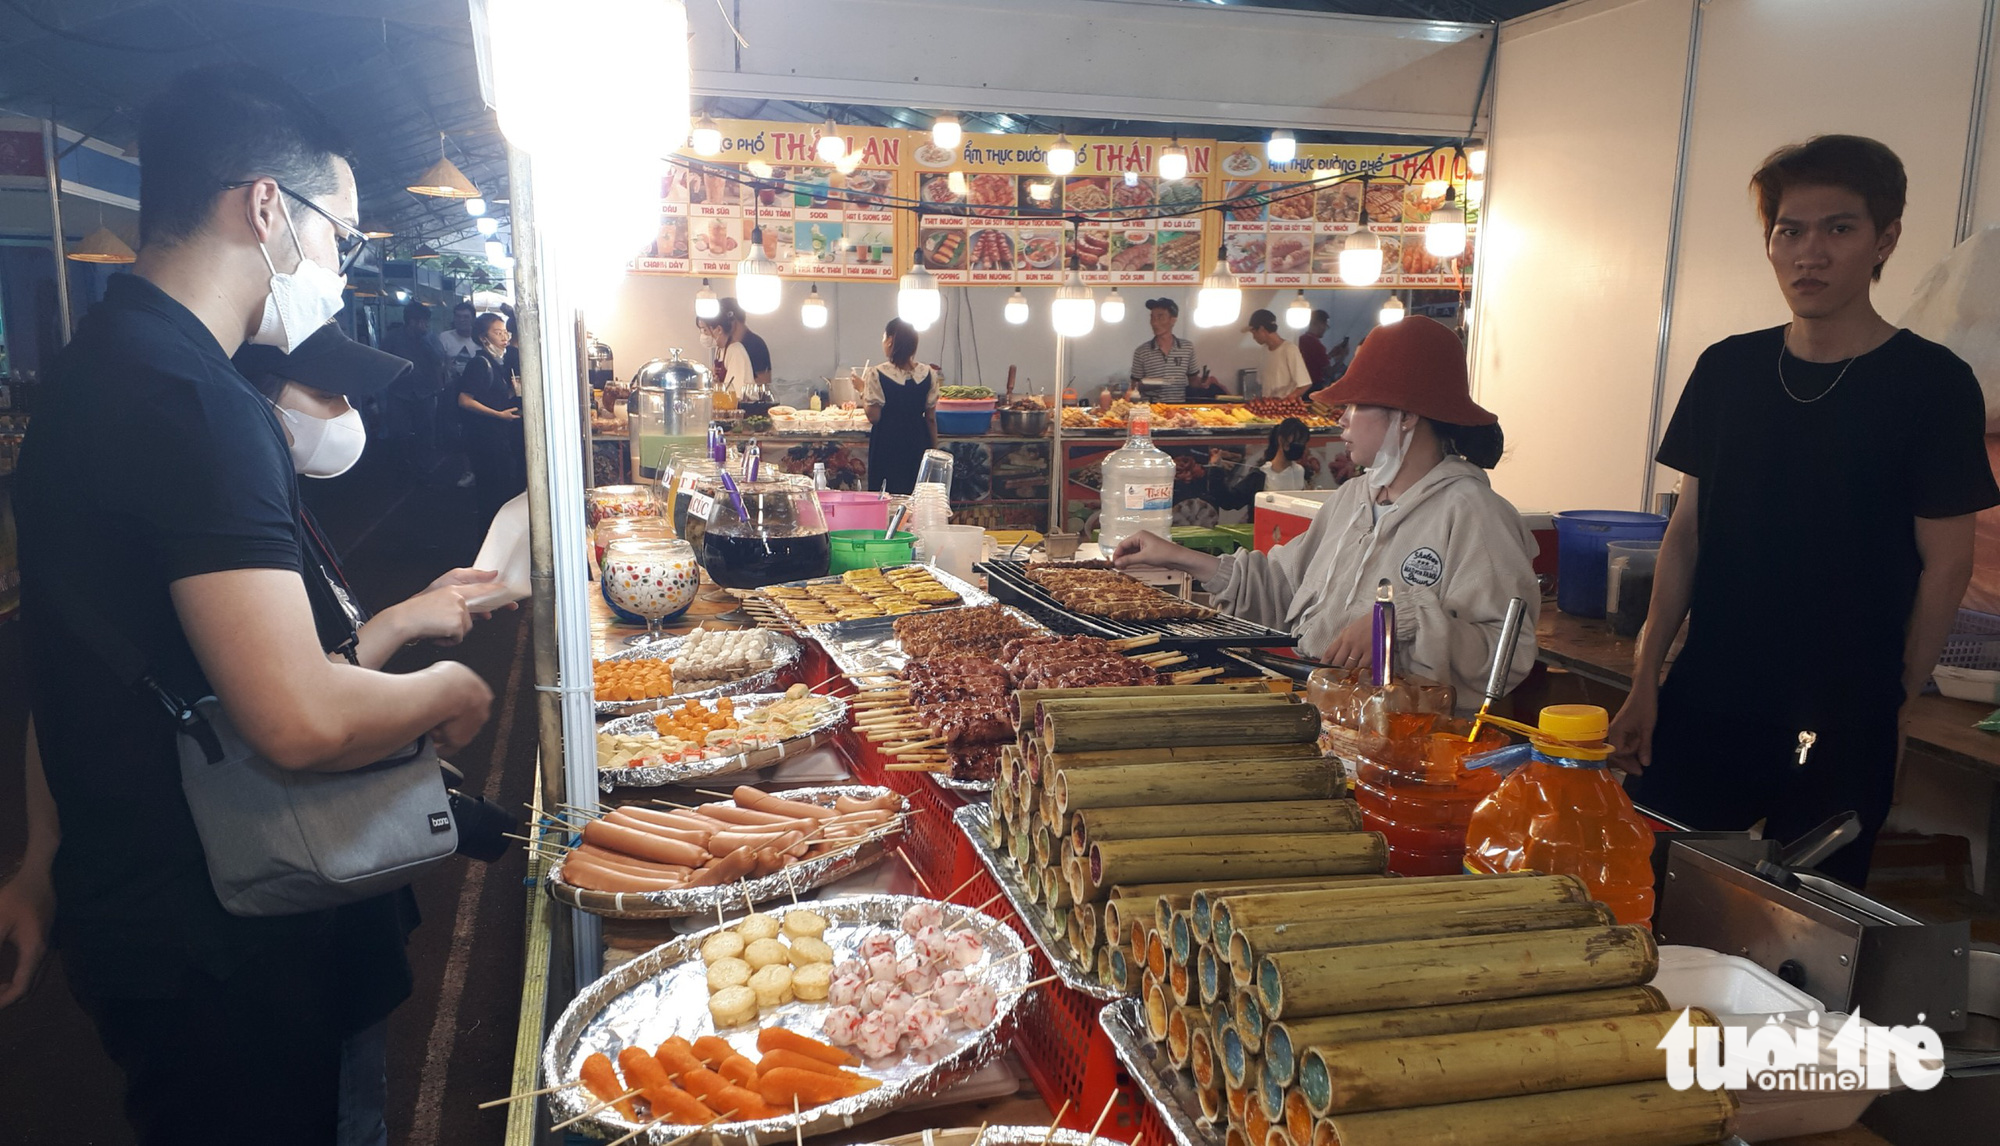 ชุดอาหารพิเศษของเอเชียตะวันออกเฉียงใต้มาบรรจบกันที่เทศกาลวัฒนธรรมการทำอาหารในนครโฮจิมินห์ - รูปภาพ 5